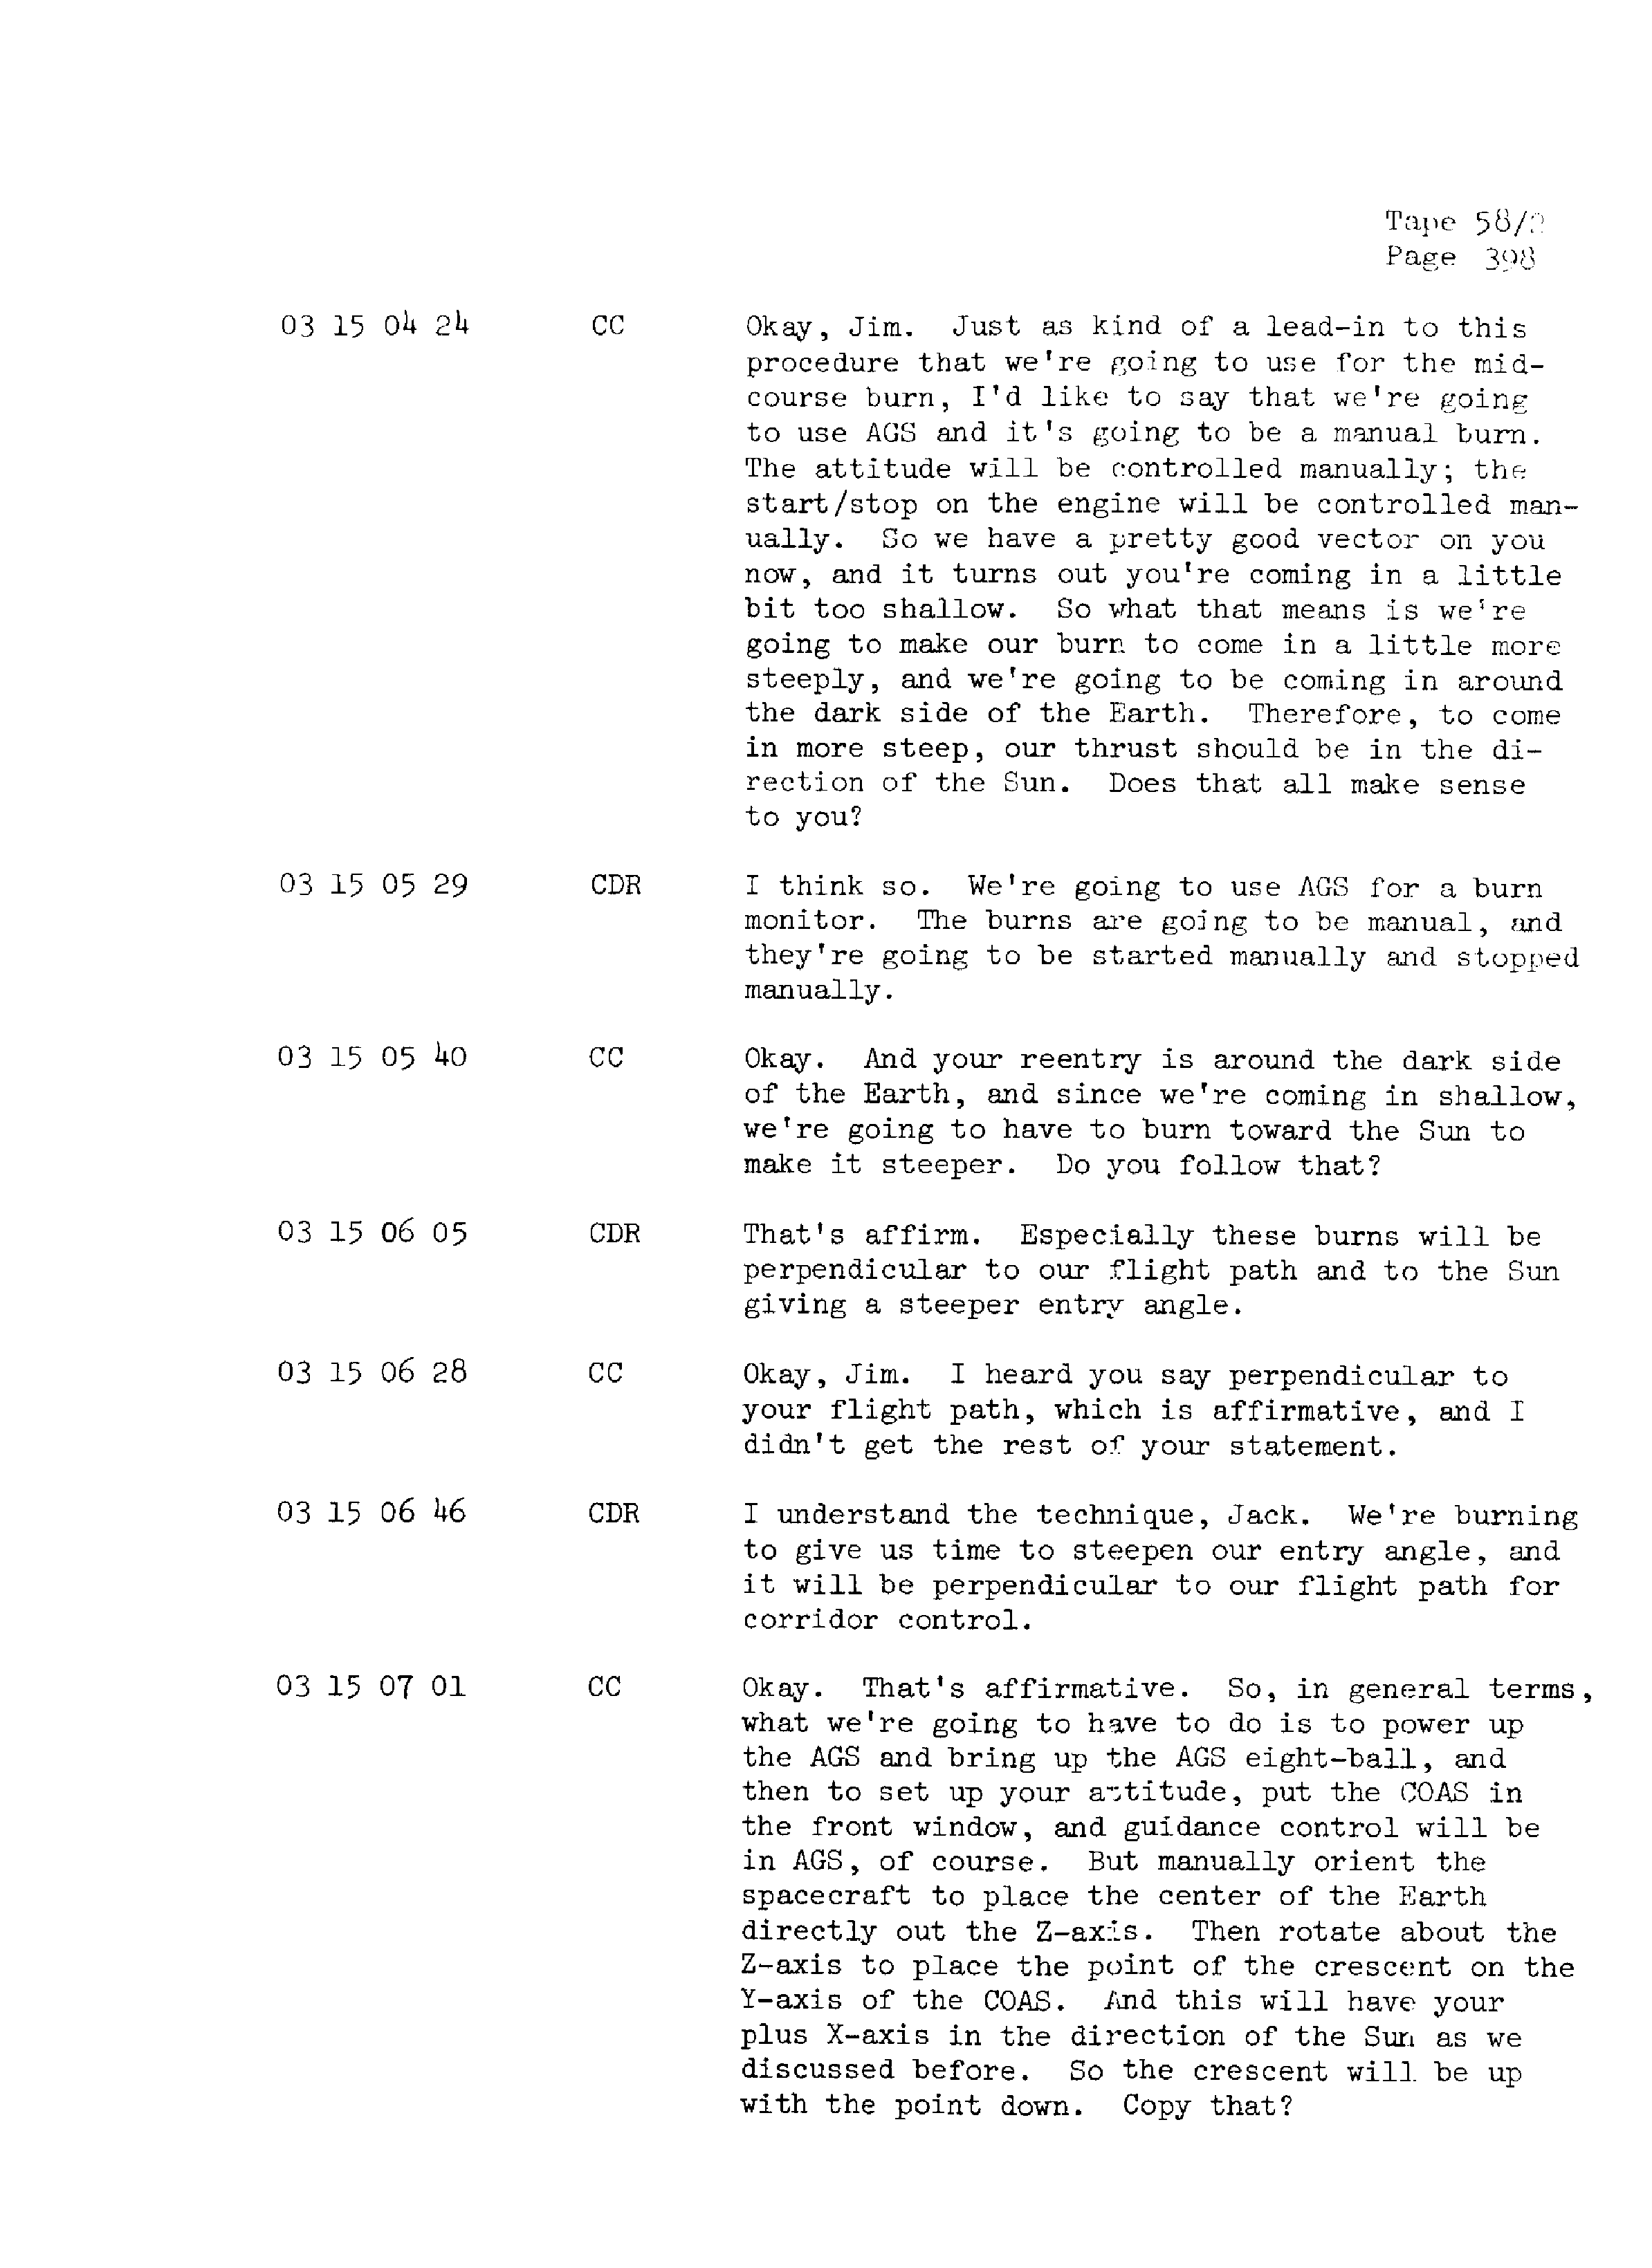 Page 405 of Apollo 13’s original transcript